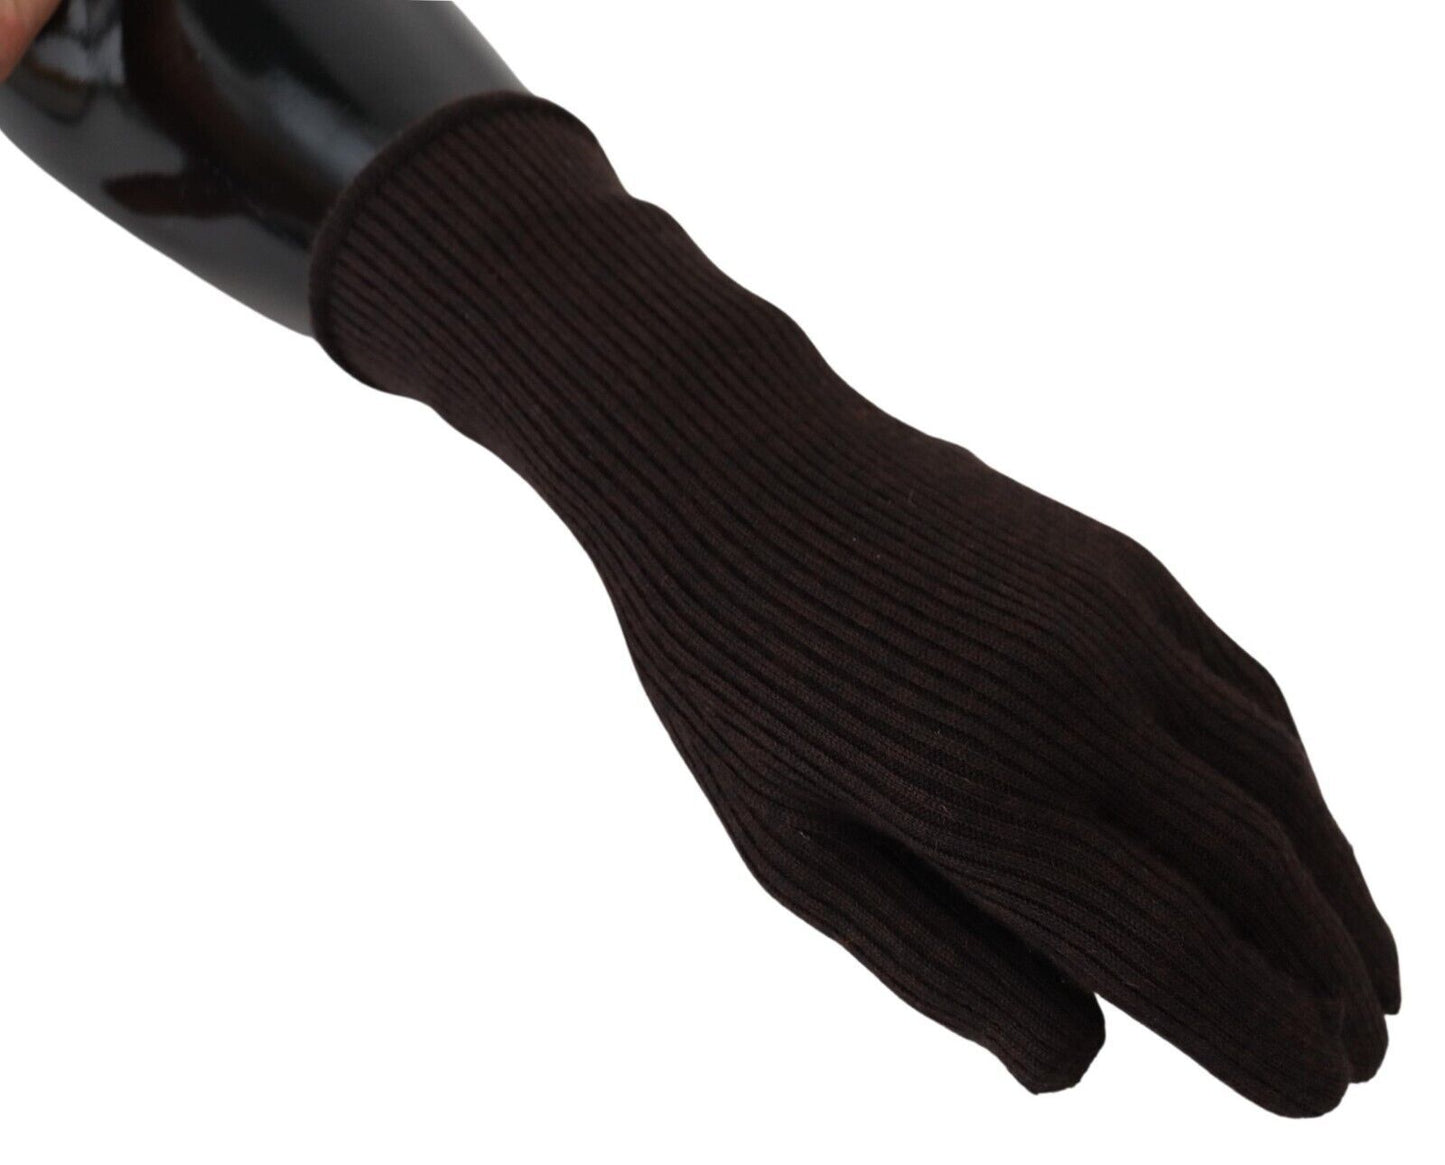 Dolce & Gabbana Elegant Silk Cashmere Brown Gloves